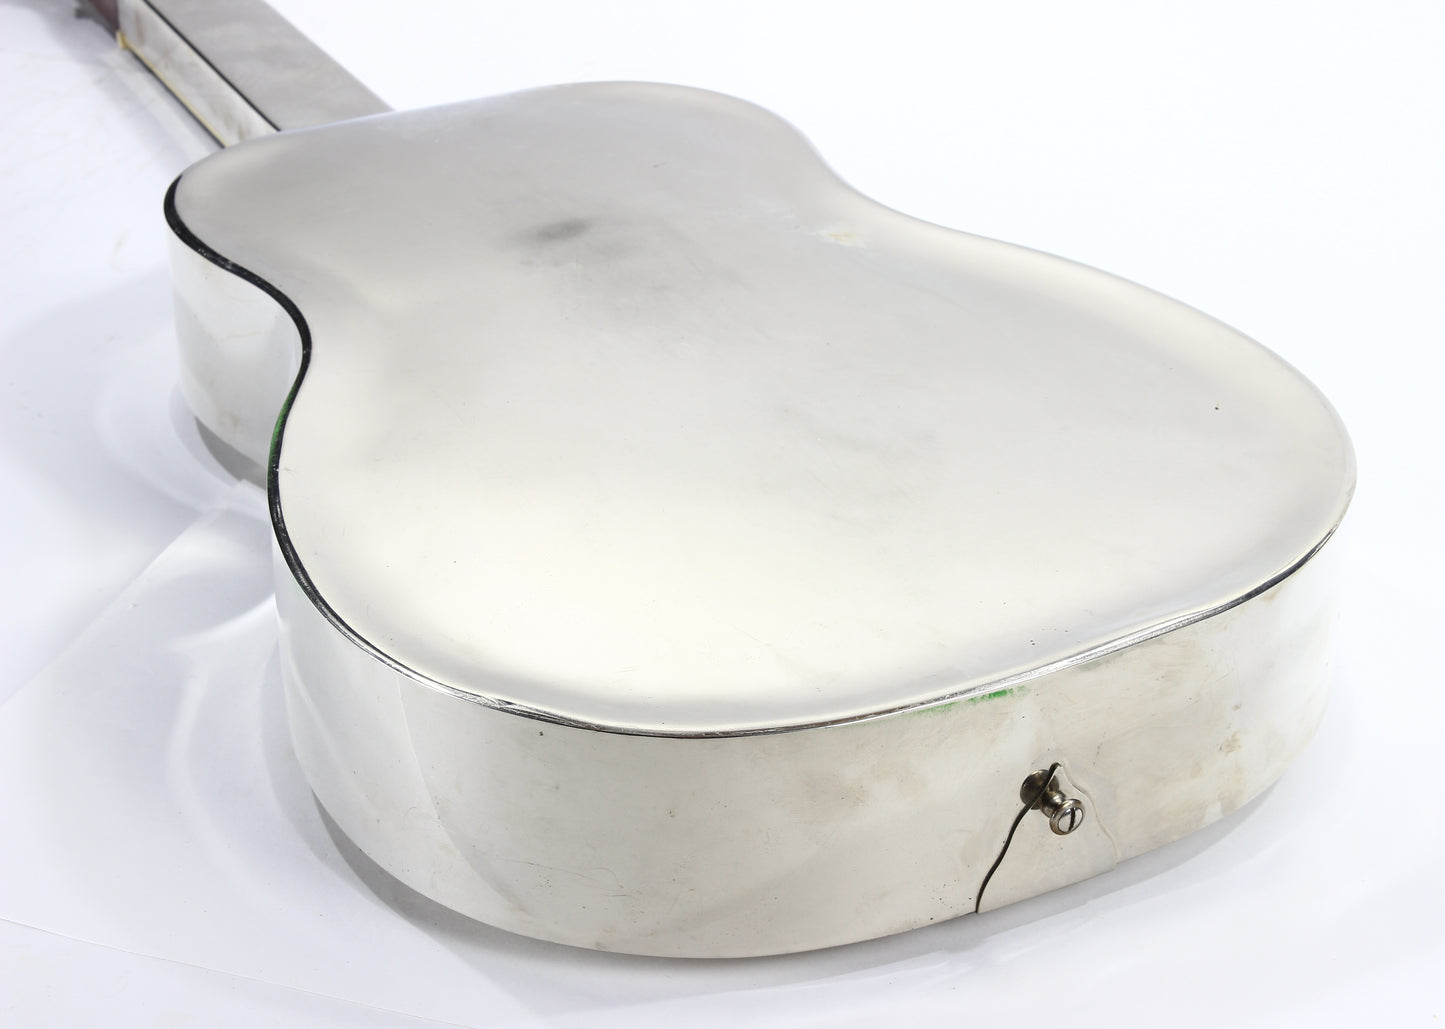 1931 National Style #1 Tri-Cone Square Neck - Prewar Resonator Guitar - Original Case, 0, o, 2, 3, vintage